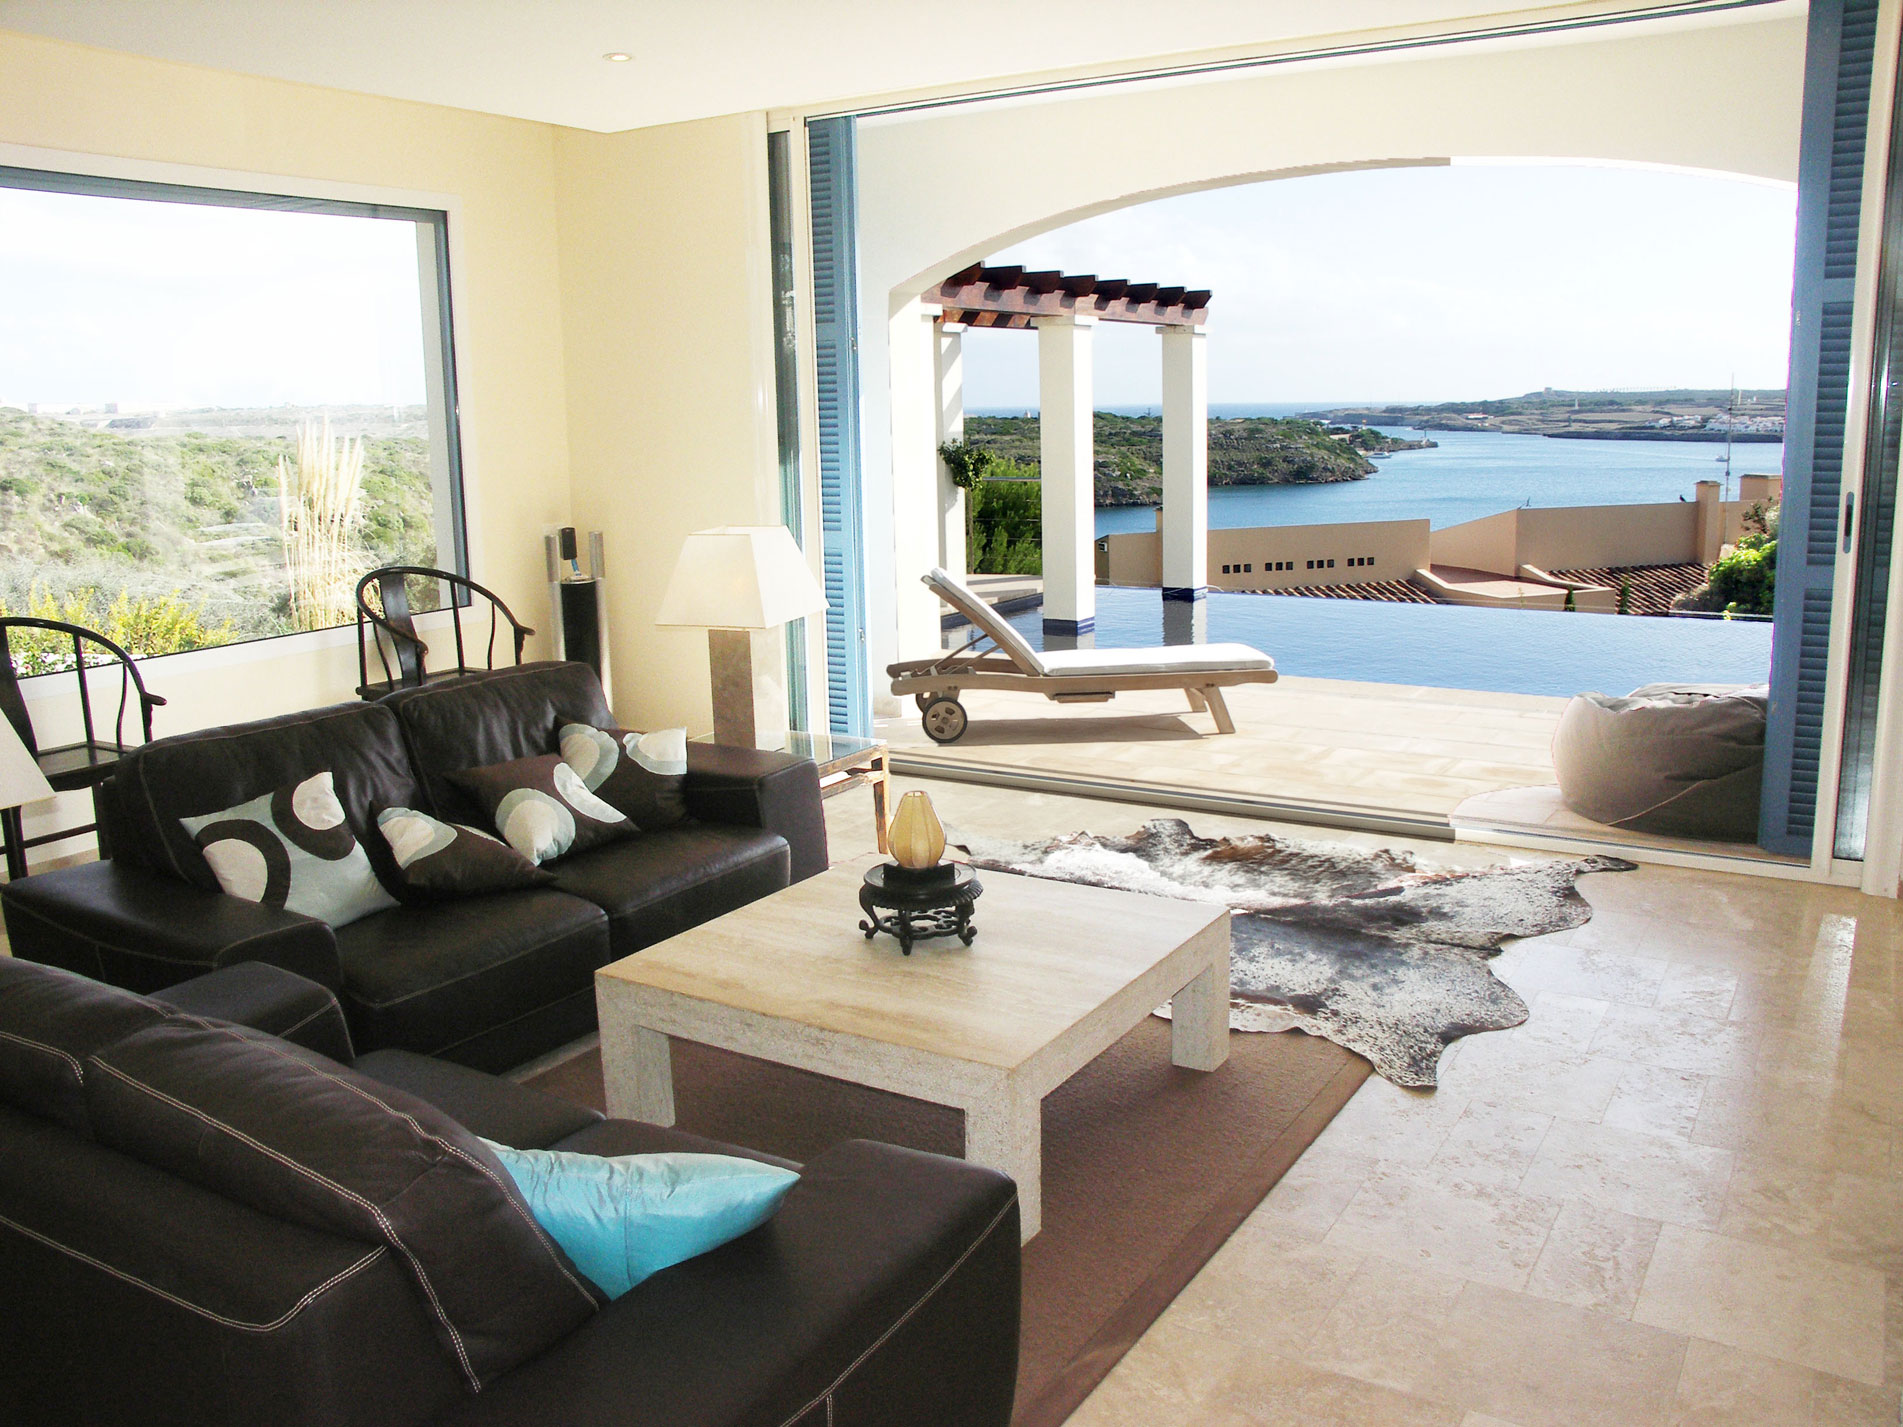 Villas to rent in Menorca